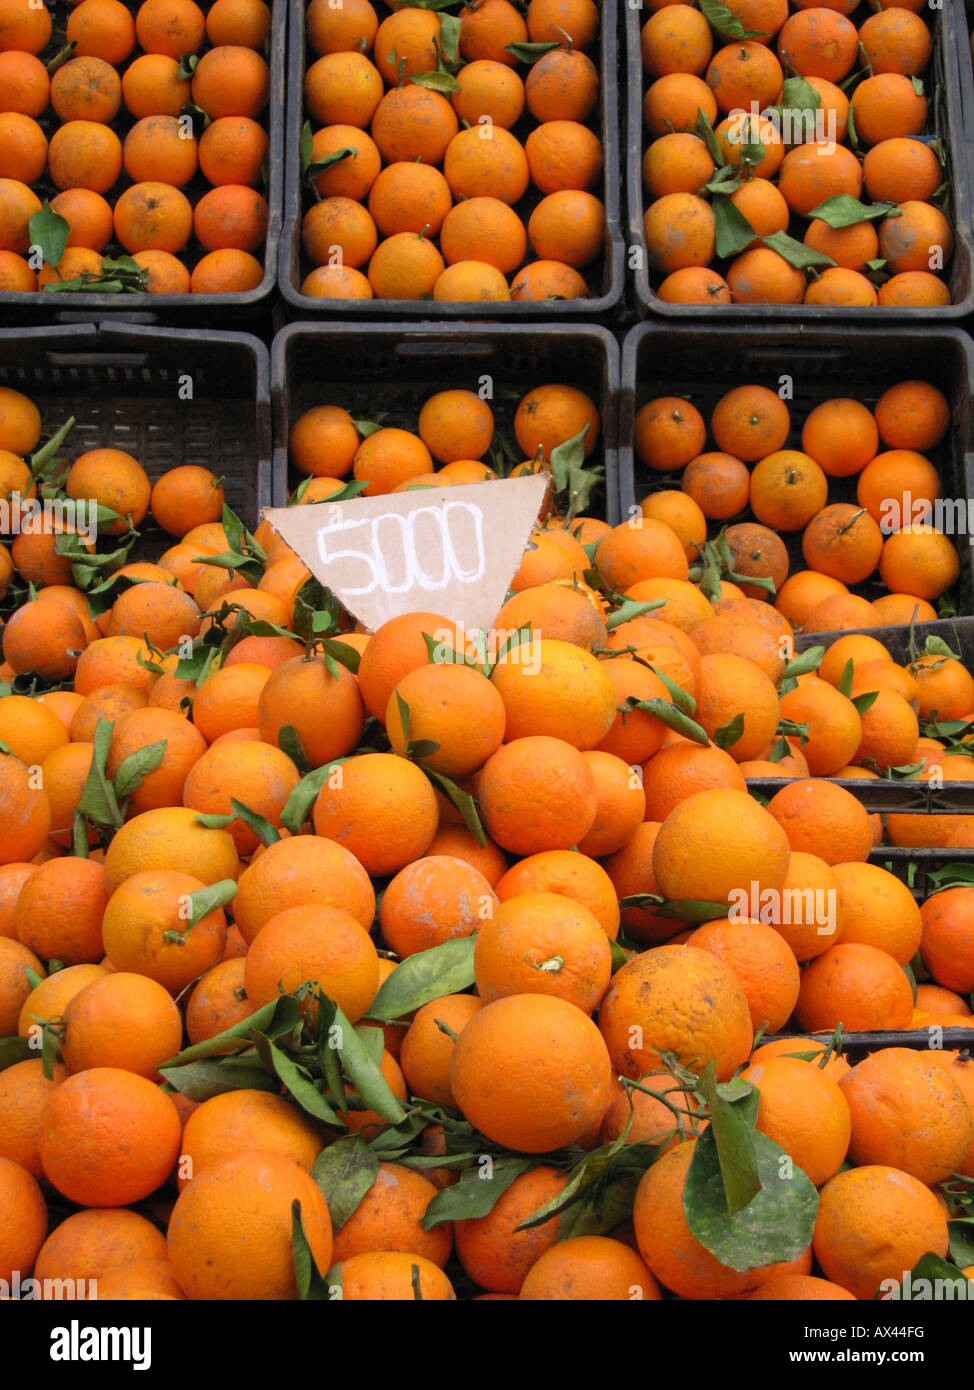 Locali di frutti di colore arancione su un cavalletto di sostegno del mercato. Cherchell , cittadina algerina, ad ovest di Algeri, Algeria, Africa Settentrionale Foto Stock